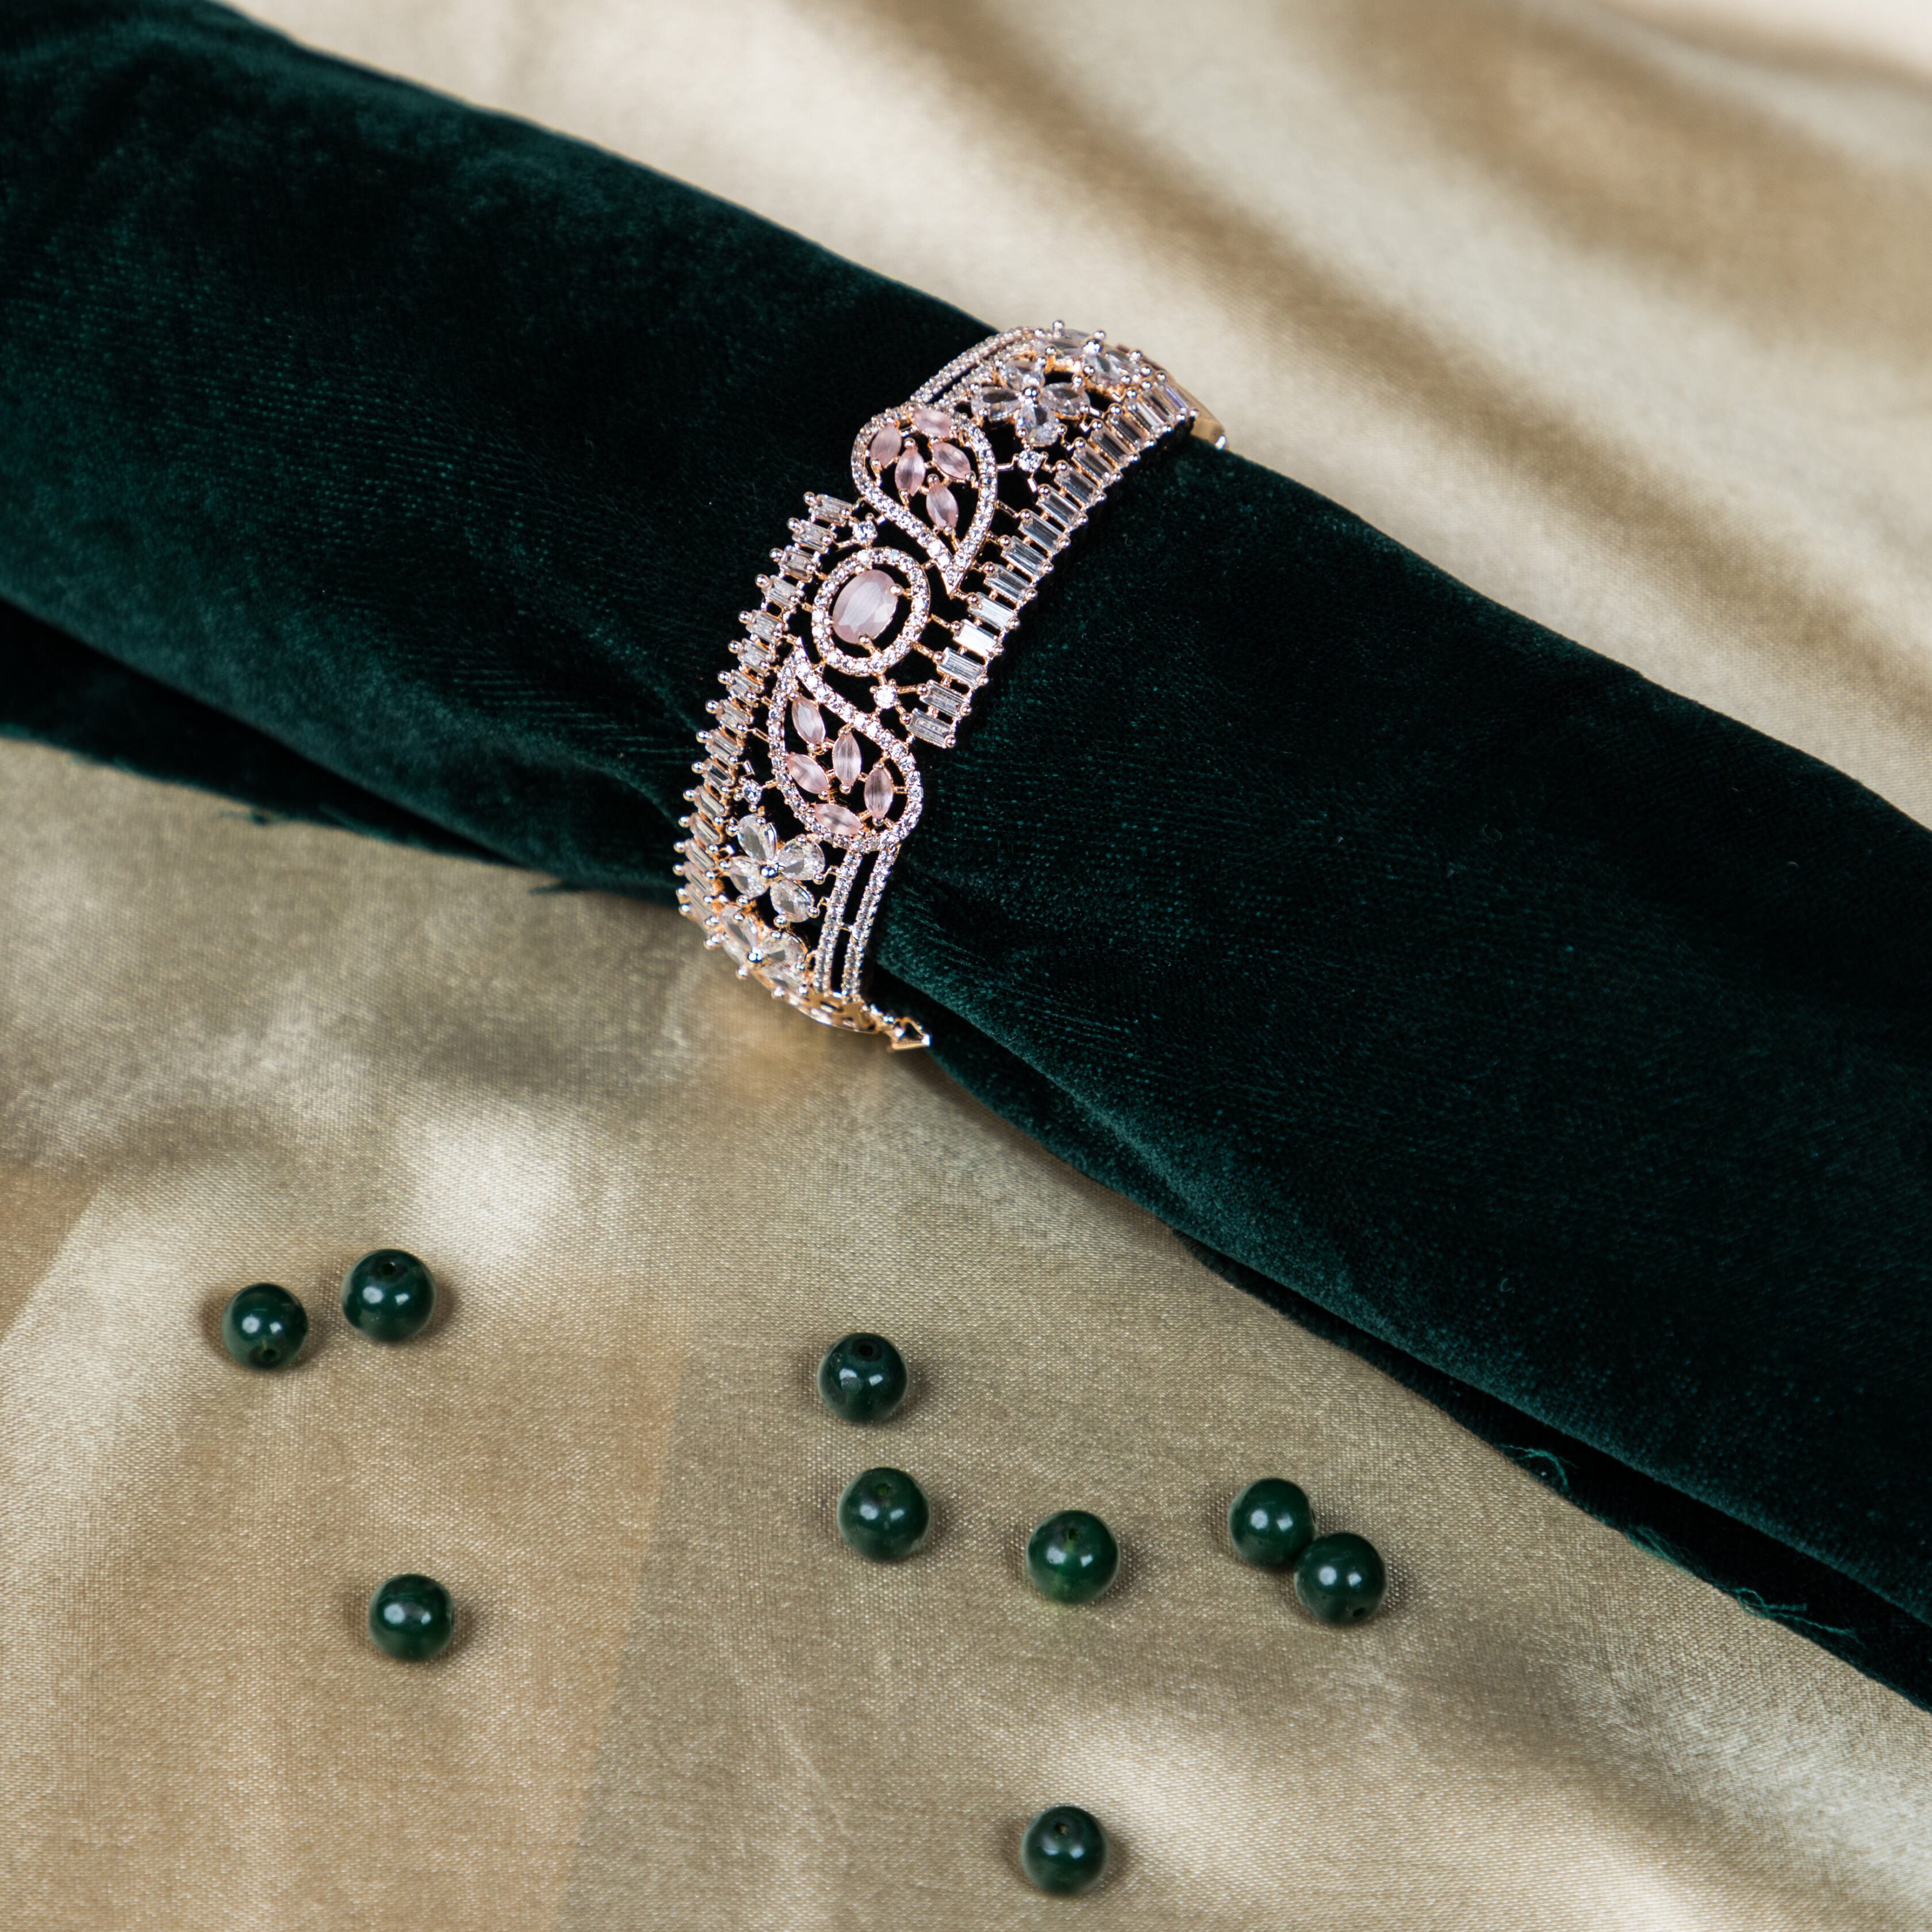 Silver Bracelets For Ladies – Jewelry for Men & Women